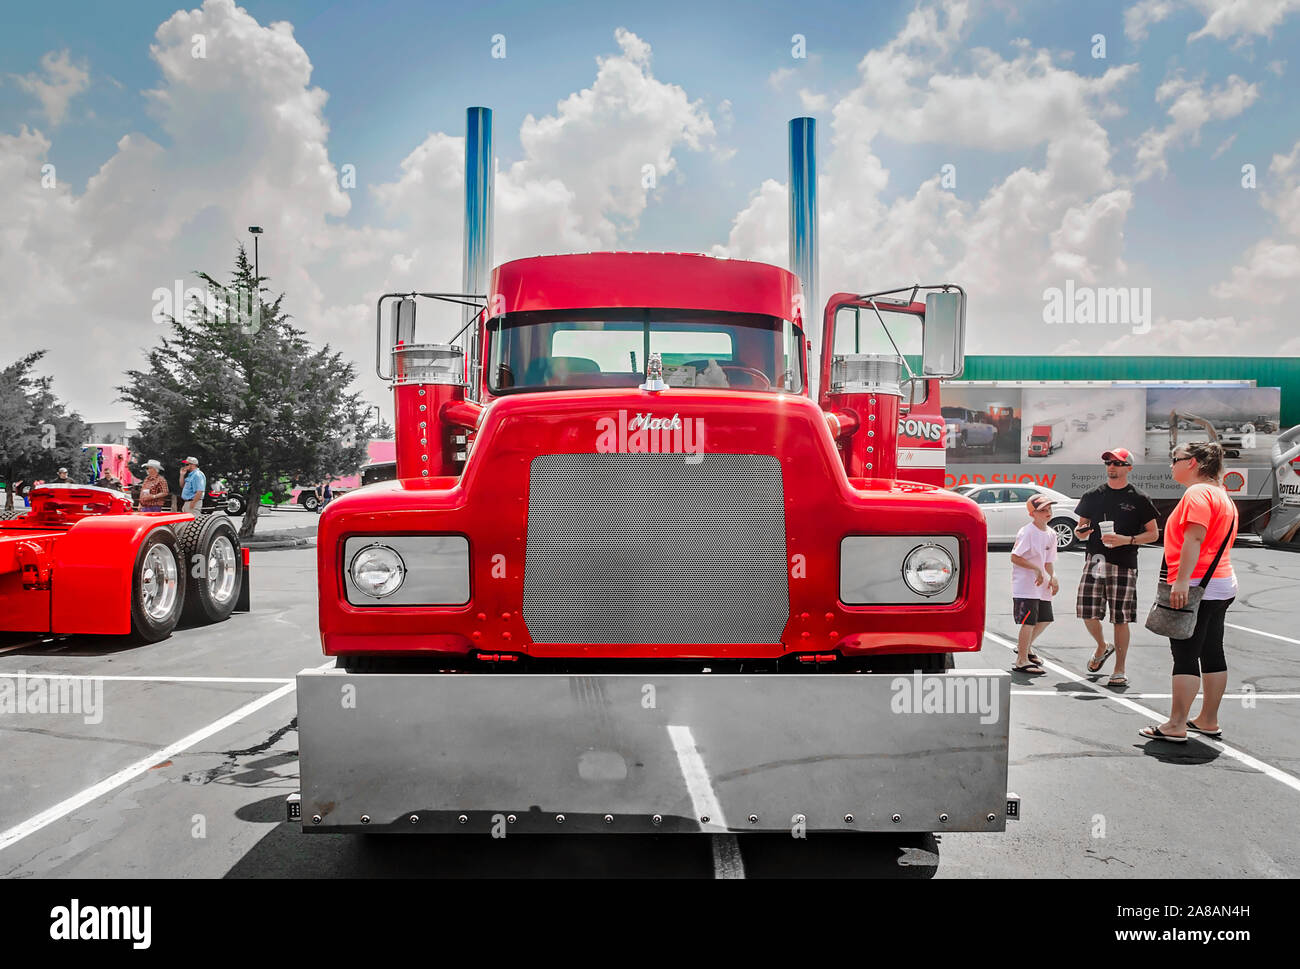 En 1991, Mack RD686 attend d'être jugé à la 34e conférence annuelle de l'SuperRigs Shell Rotella concours de beauté de camions à Joplin, Missouri. Banque D'Images